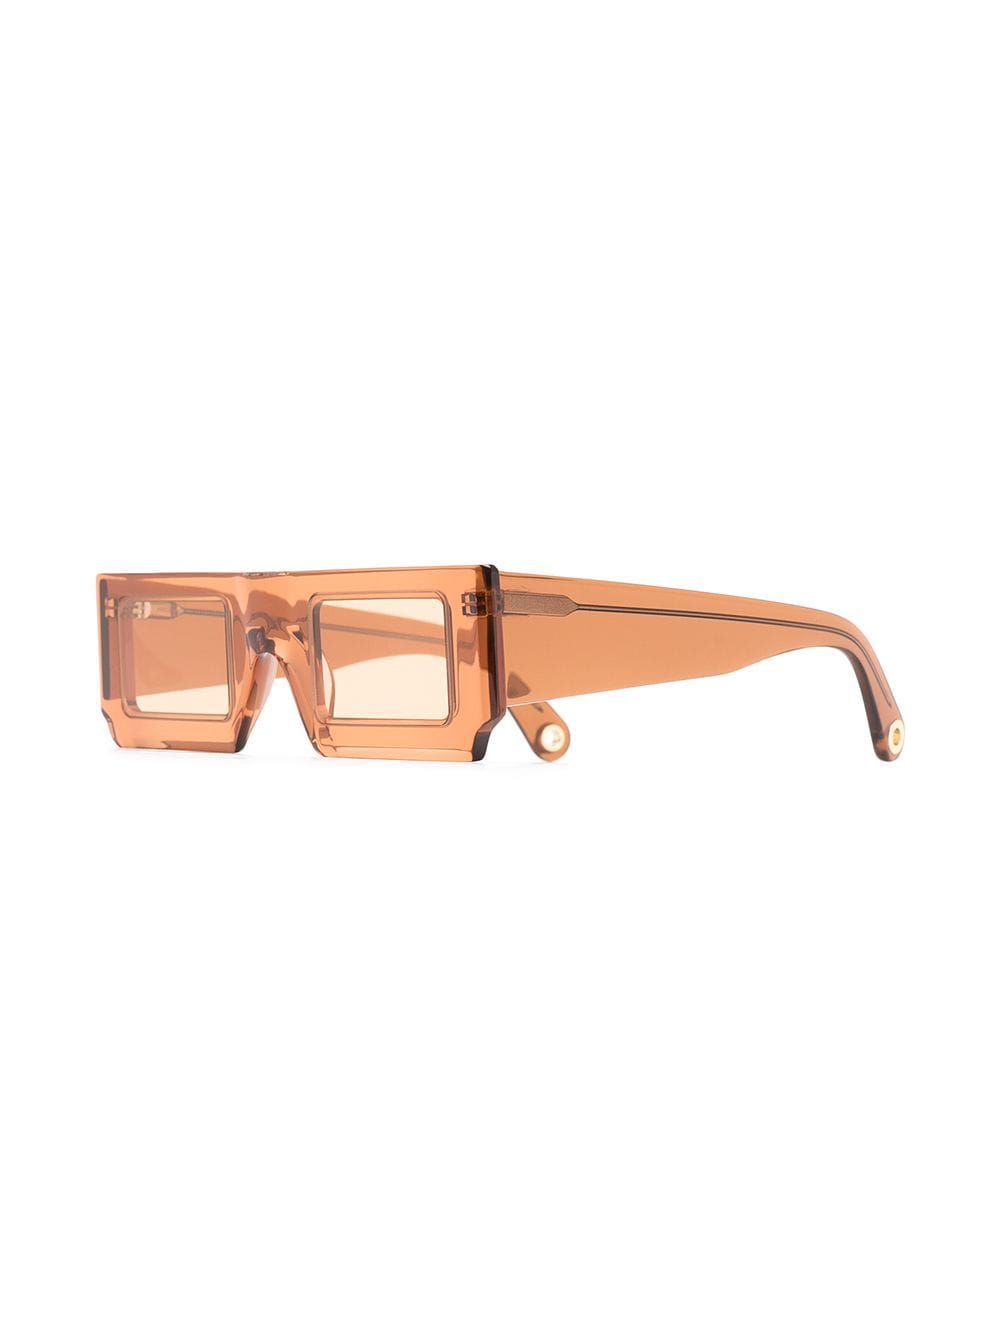 фото Jacquemus солнцезащитные очки les lunettes soleil в прямоугольной оправе